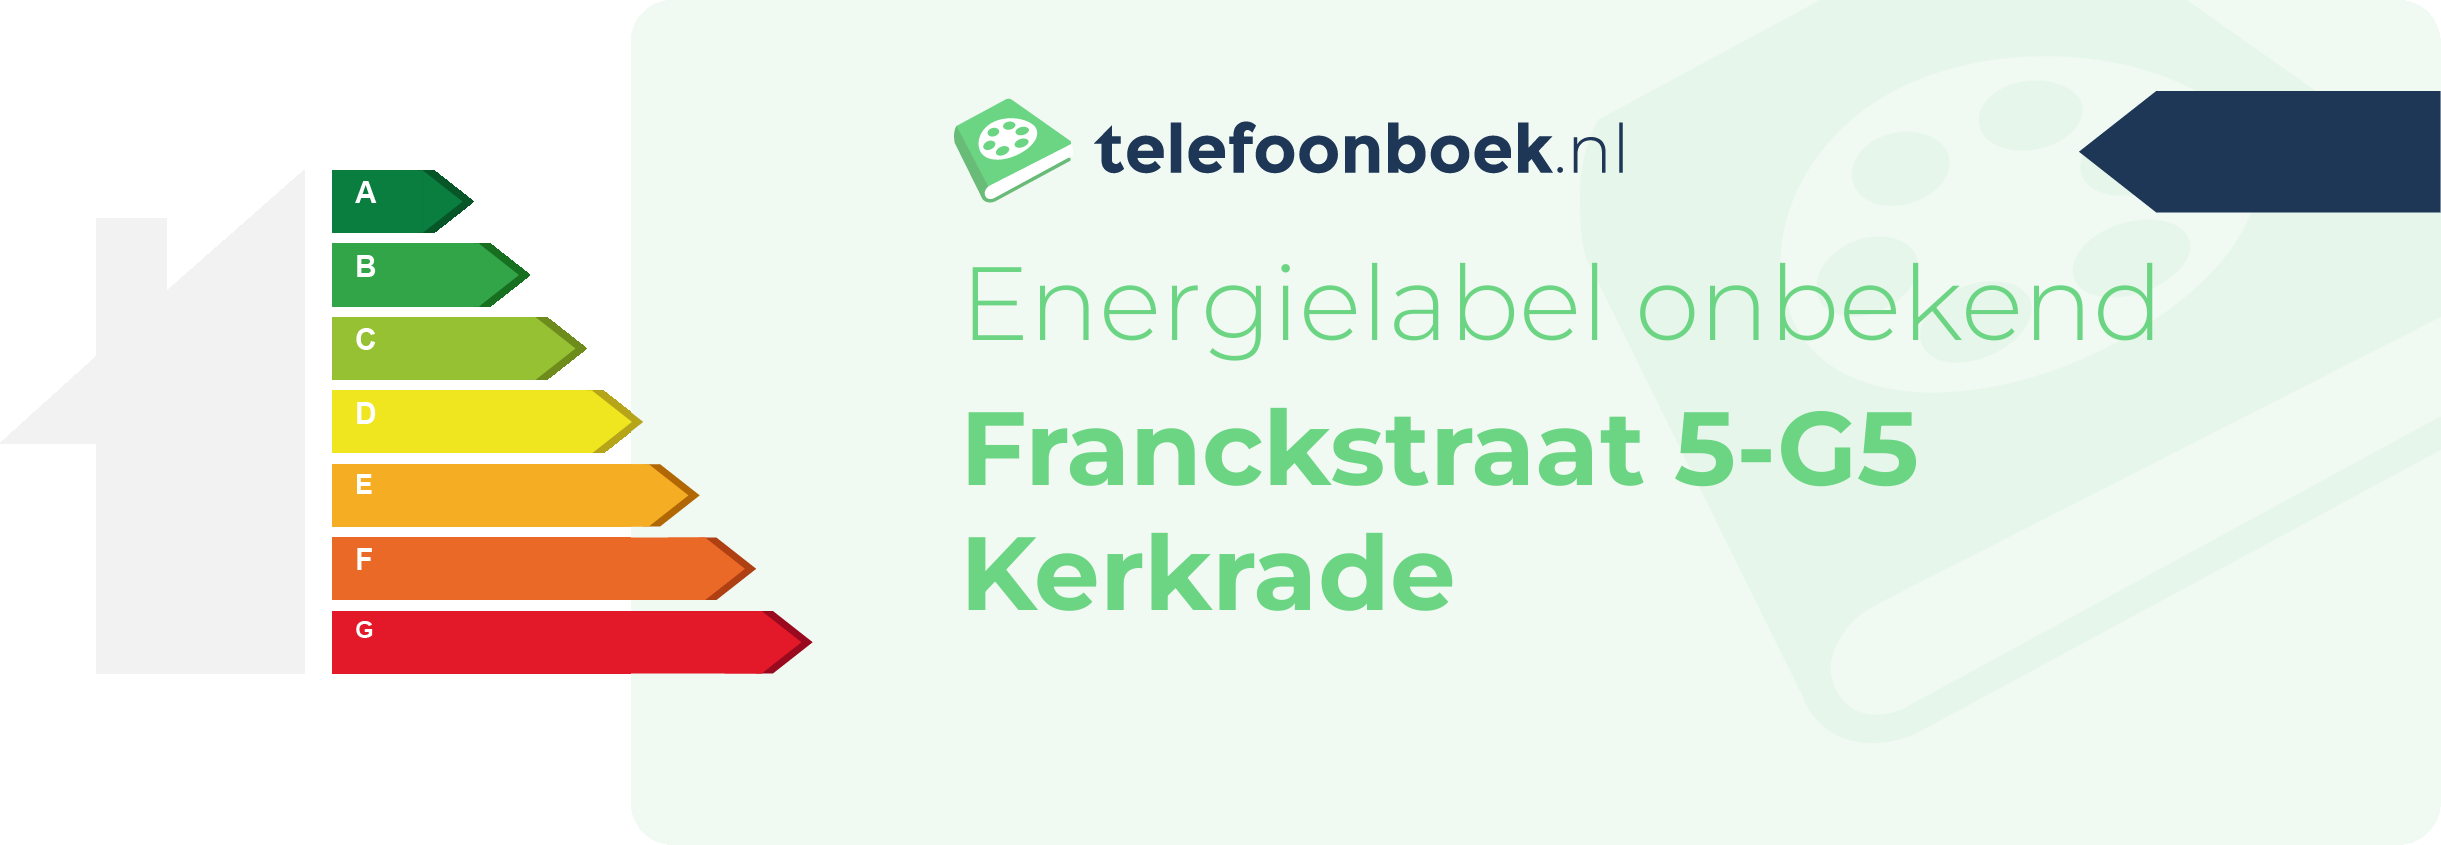 Energielabel Franckstraat 5-G5 Kerkrade